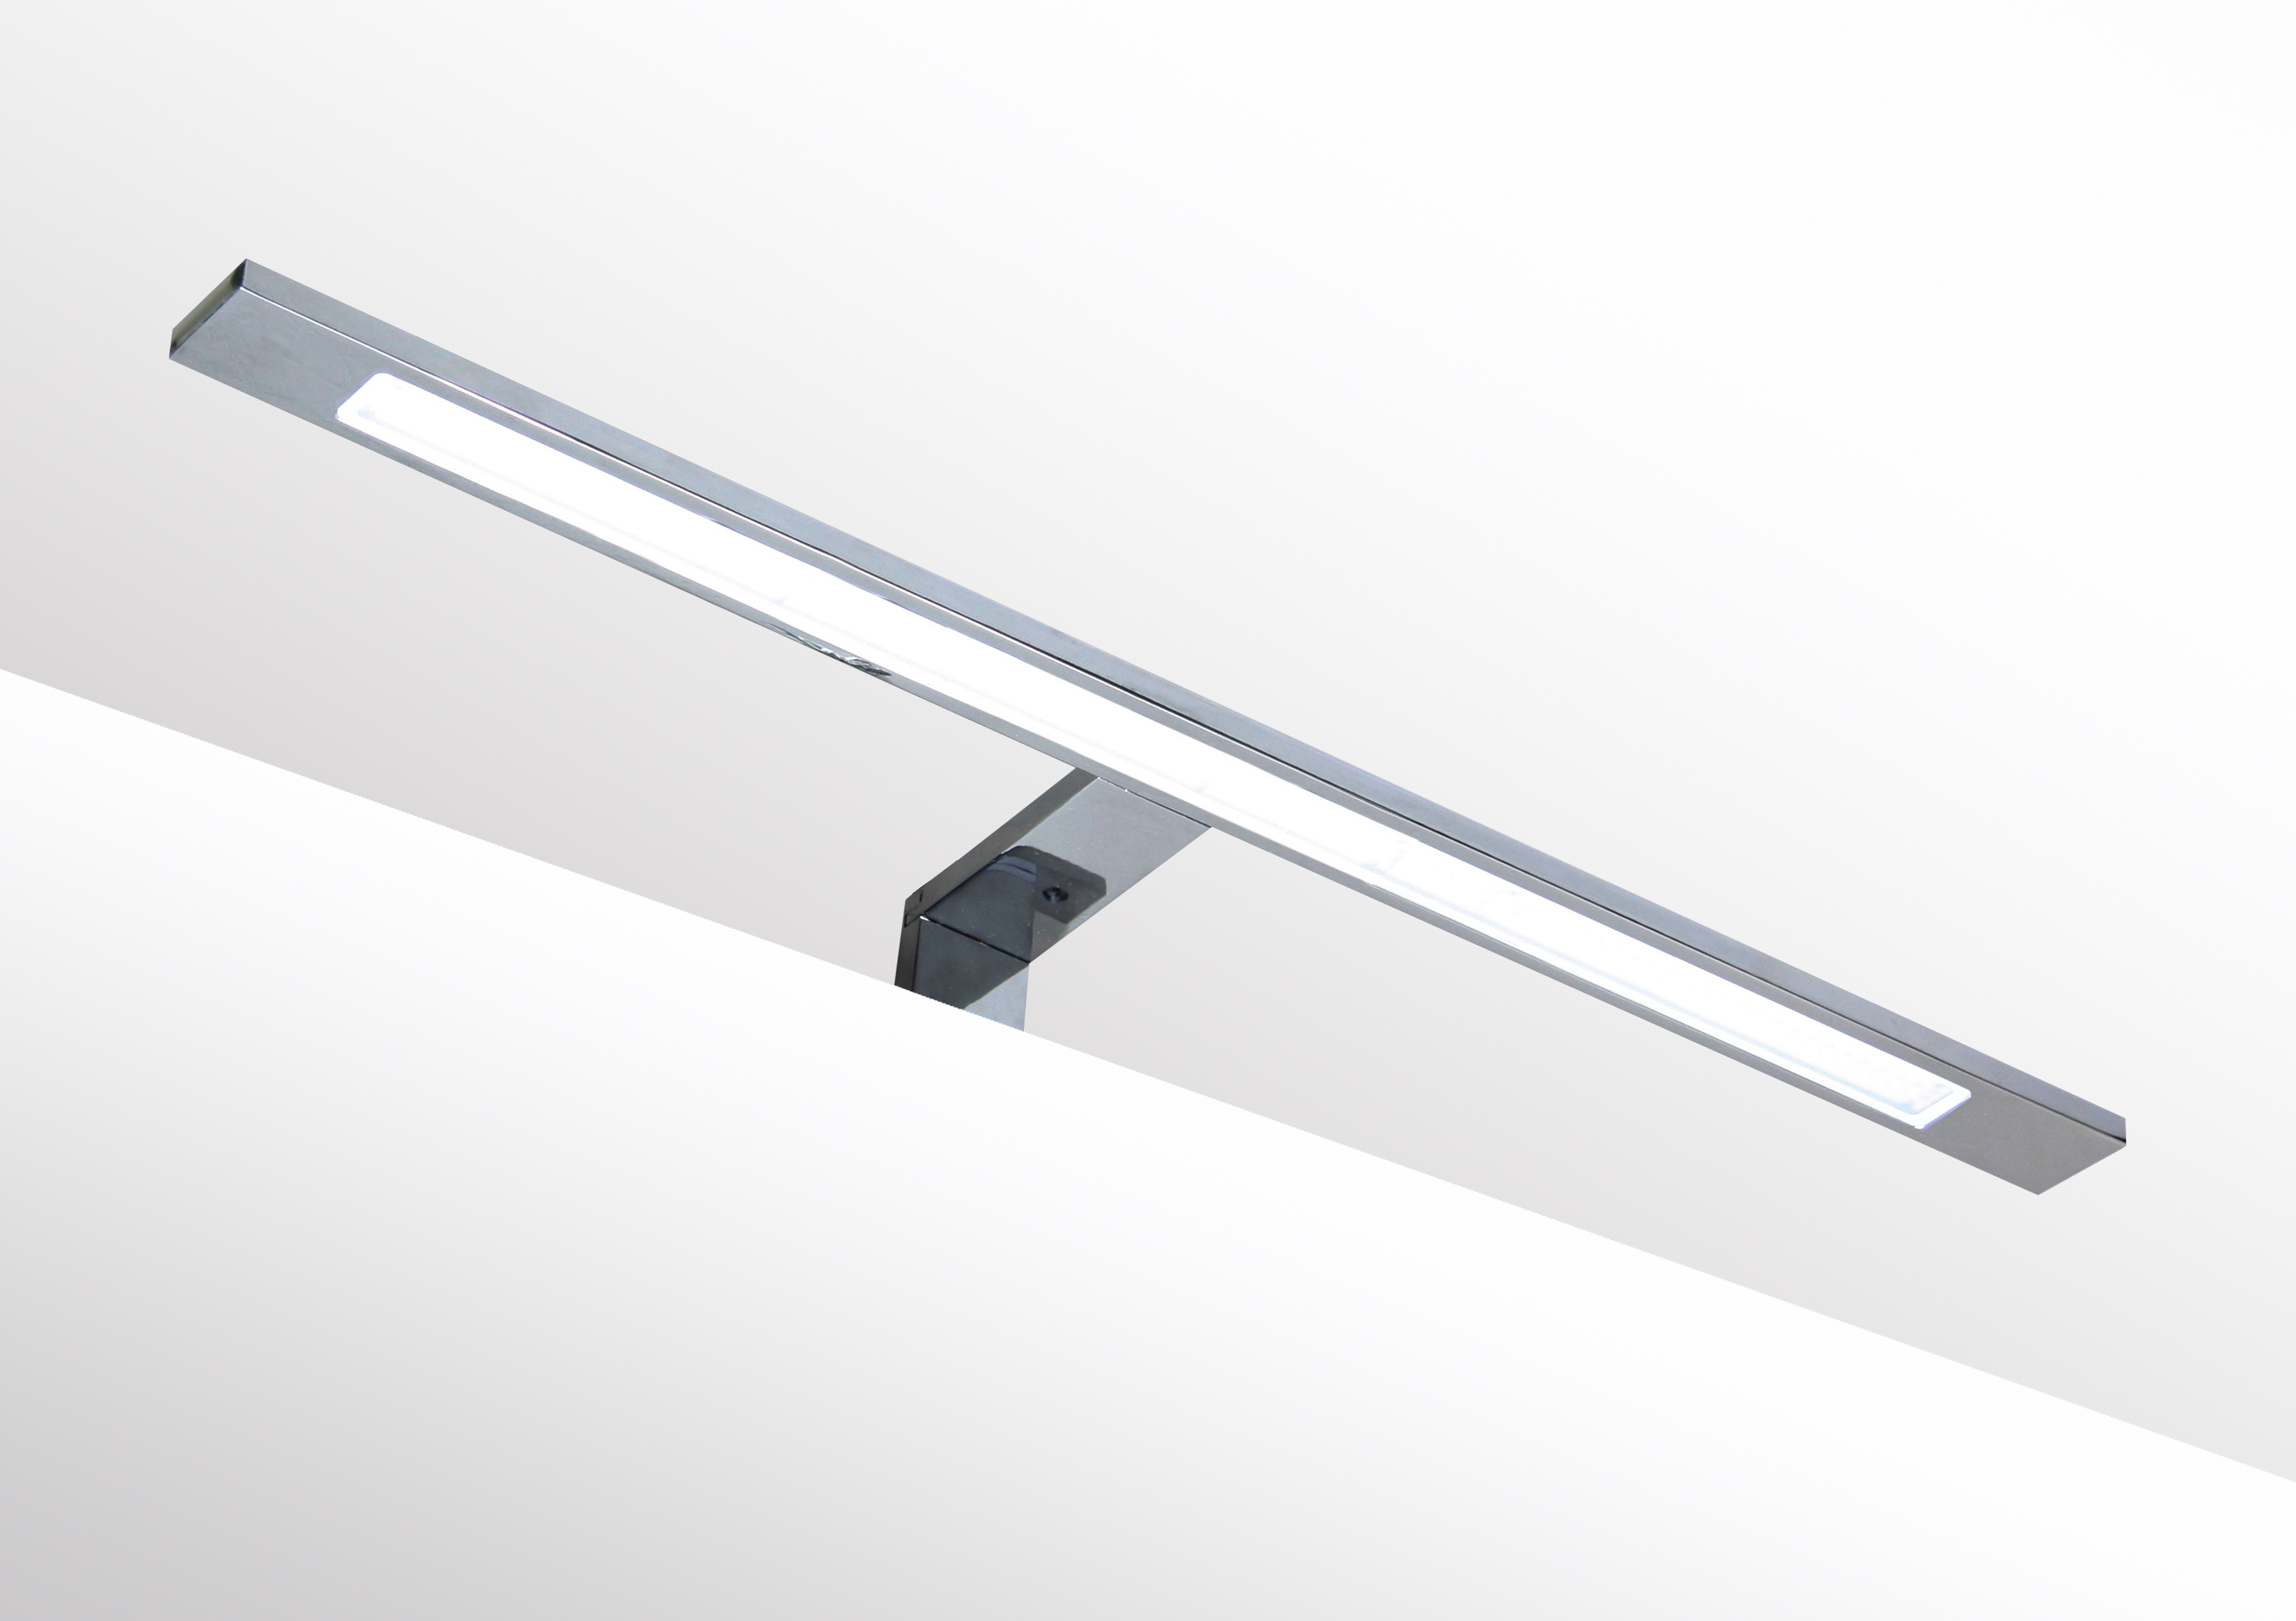 LED Lampe IS020-600A- warm weiß für Badezimmer / Spiegel Beleuchtung